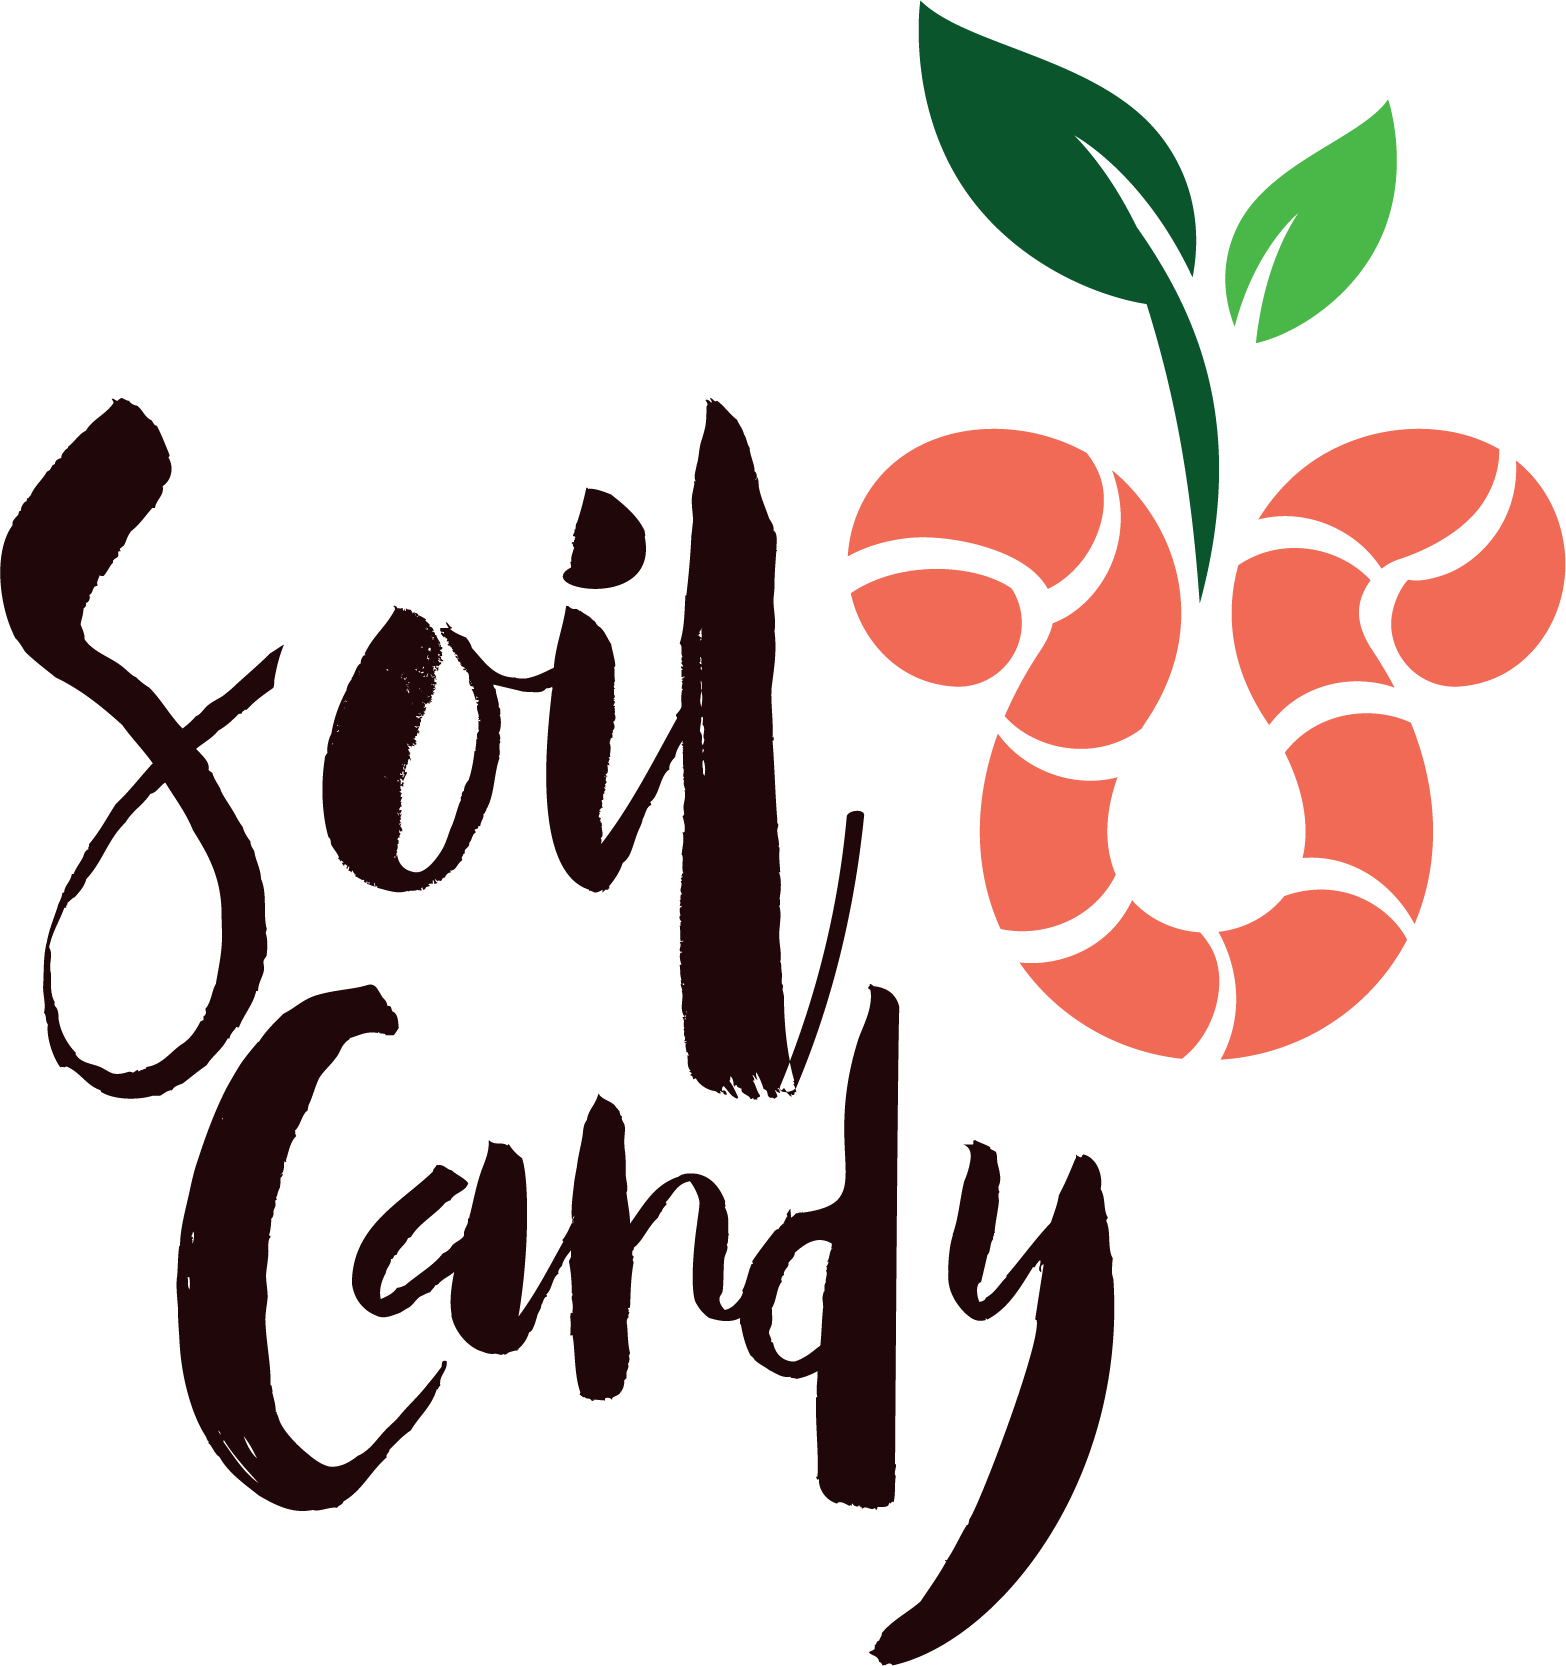 SoilCandy